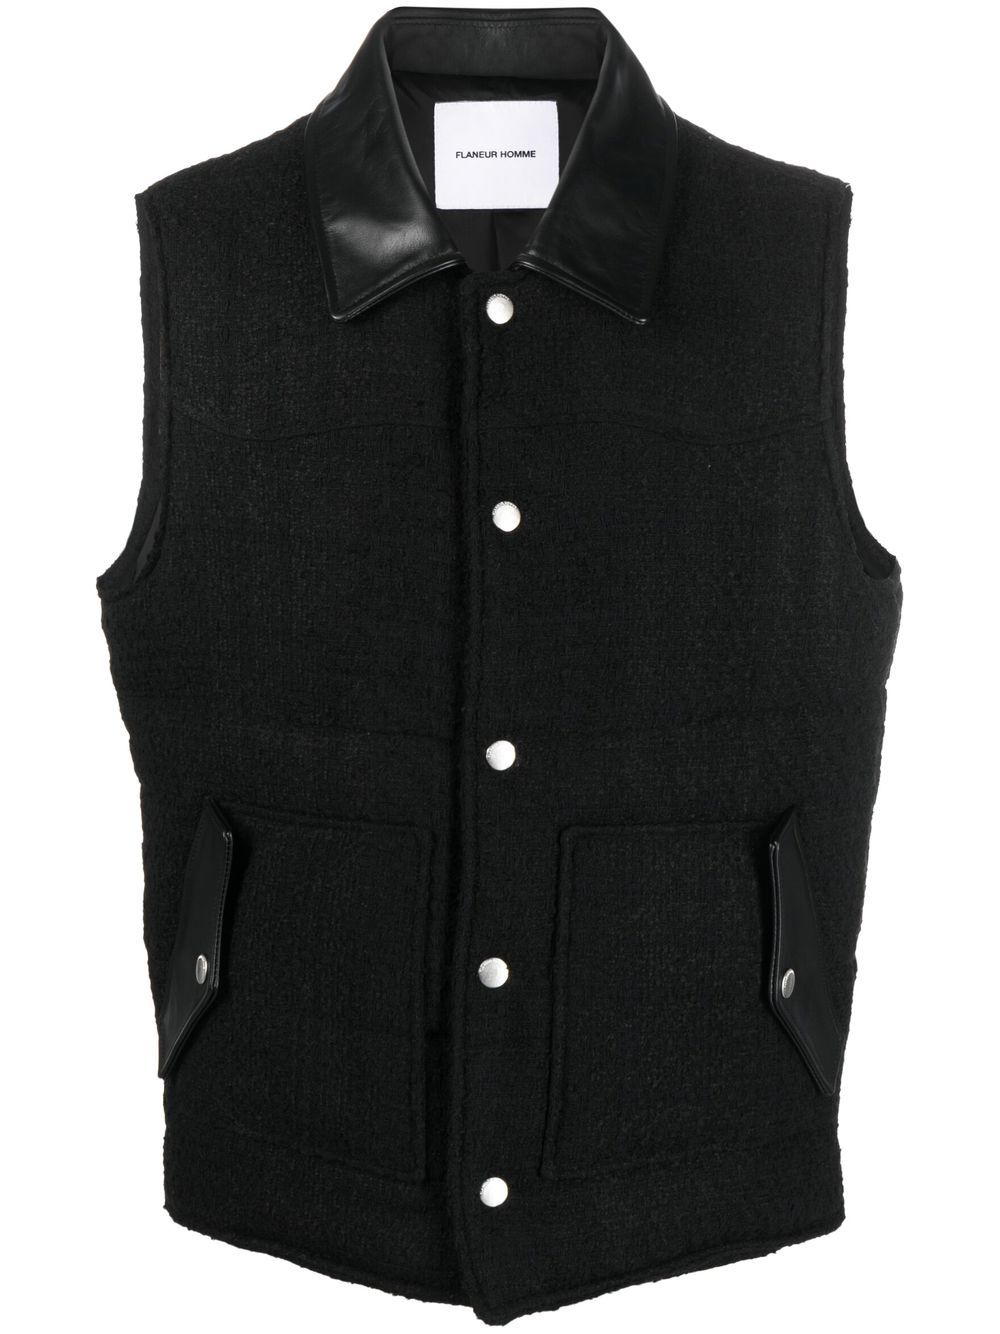 Flaneur Homme Padded Tweed Vest In Black